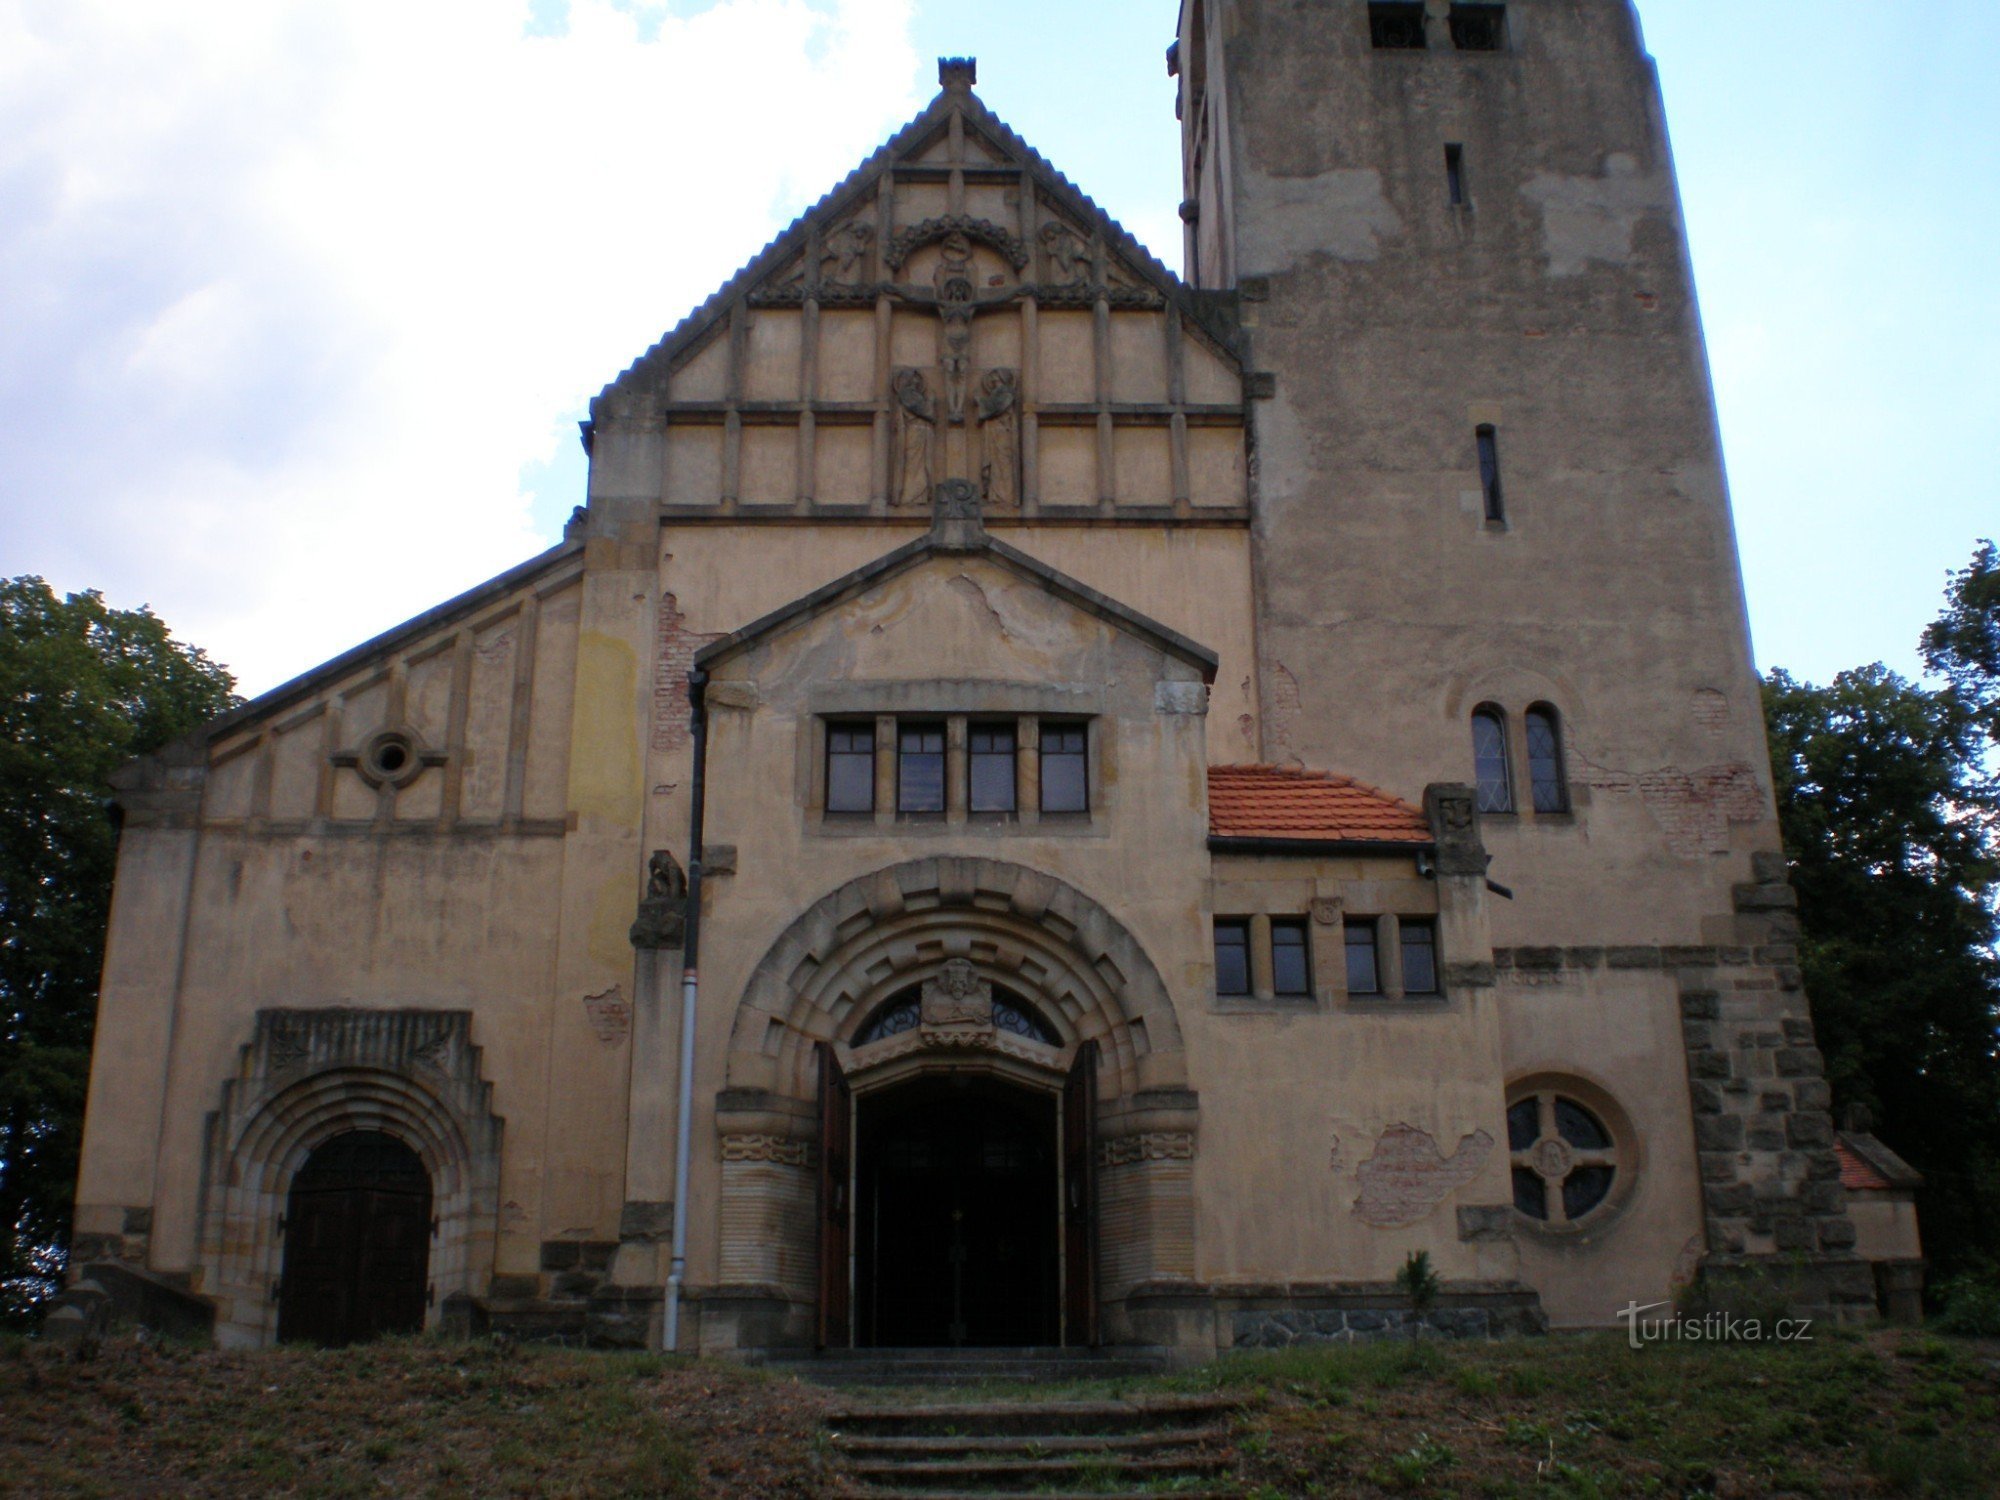 Štěchovice - igreja de St. Jan Nepomucký